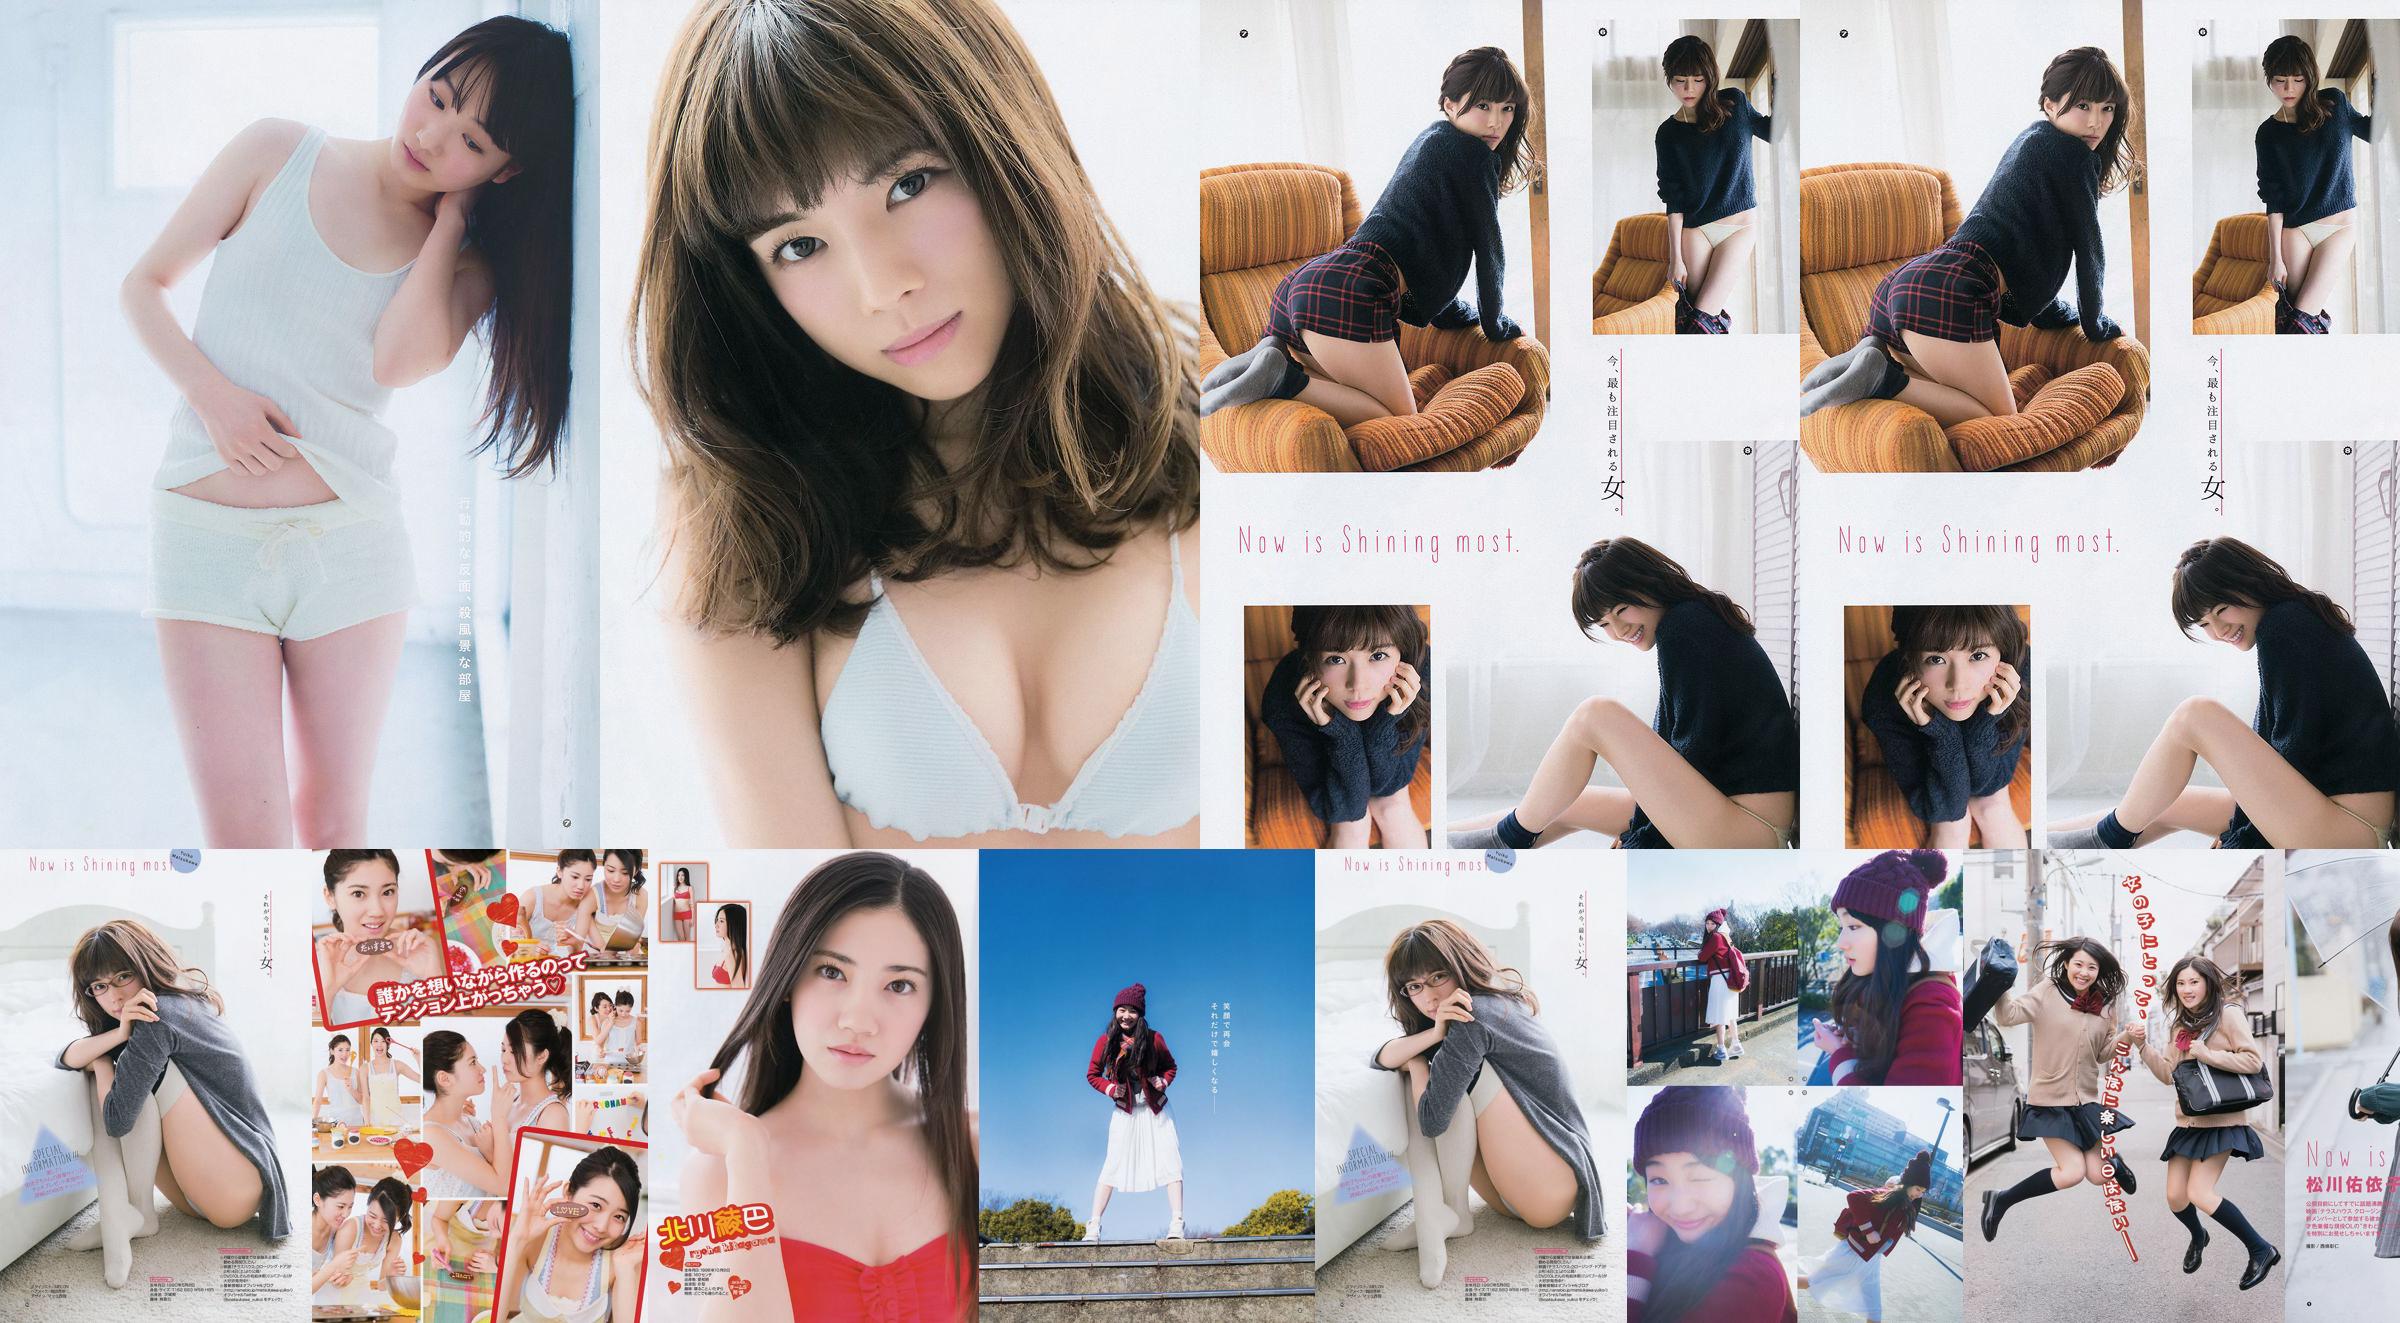 [Young Gangan] Ryoha Kitagawa Ami Miyamae Yuiko Matsukawa Narumi Akizuki 2015 Fotografia No.04 No.3c1519 Página 1